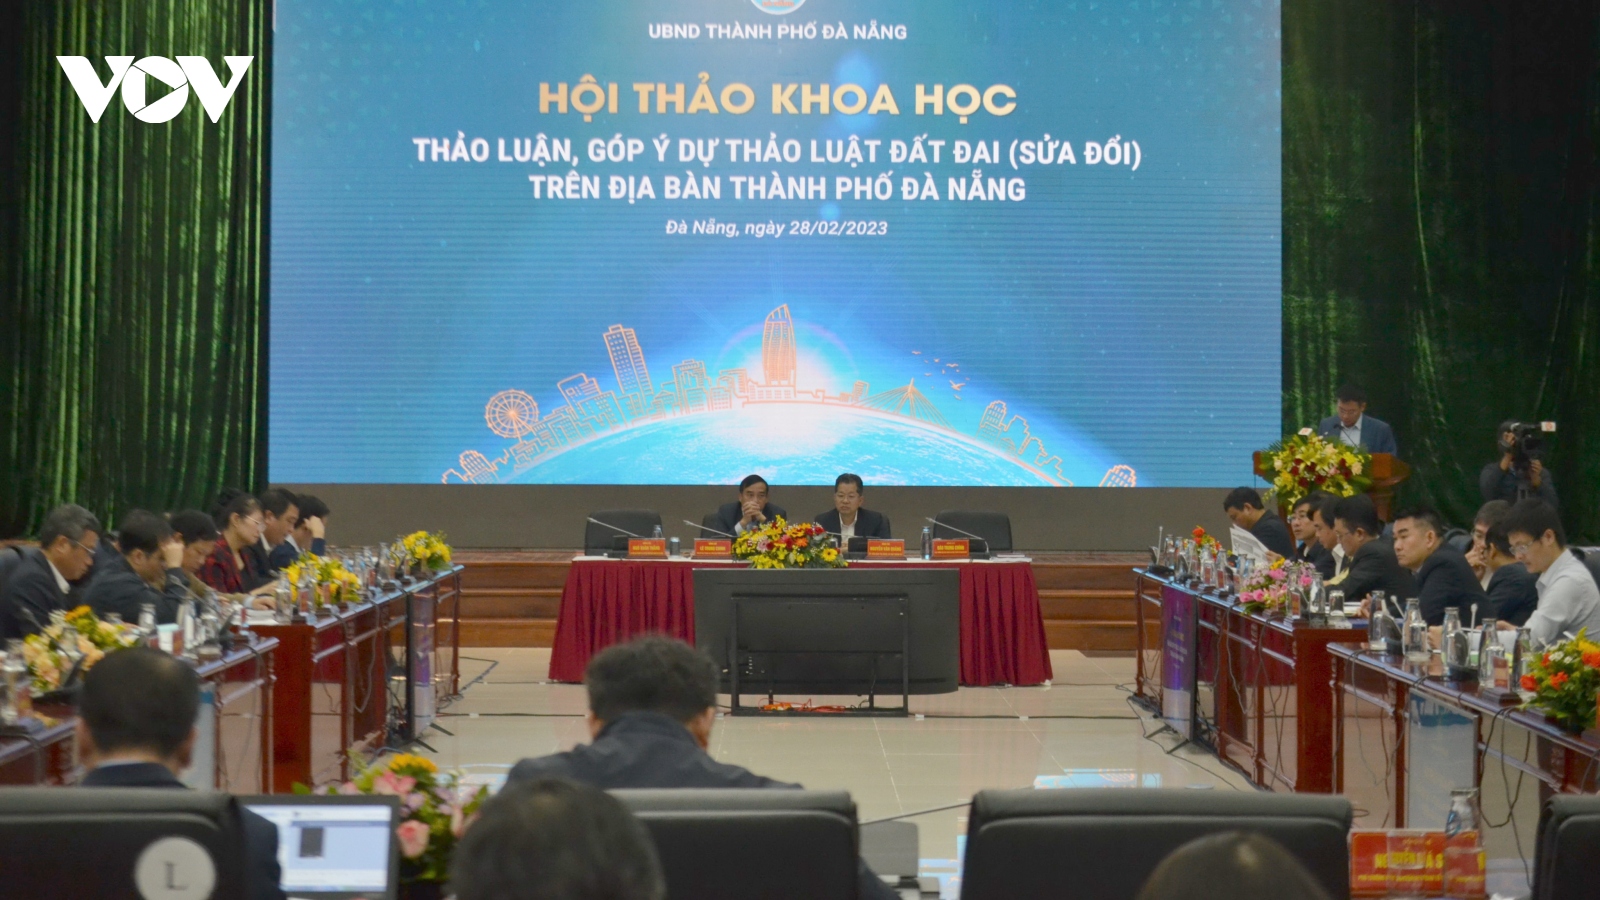 Đà Nẵng tổ chức hội thảo khoa học góp ý dự thảo Luật Đất đai